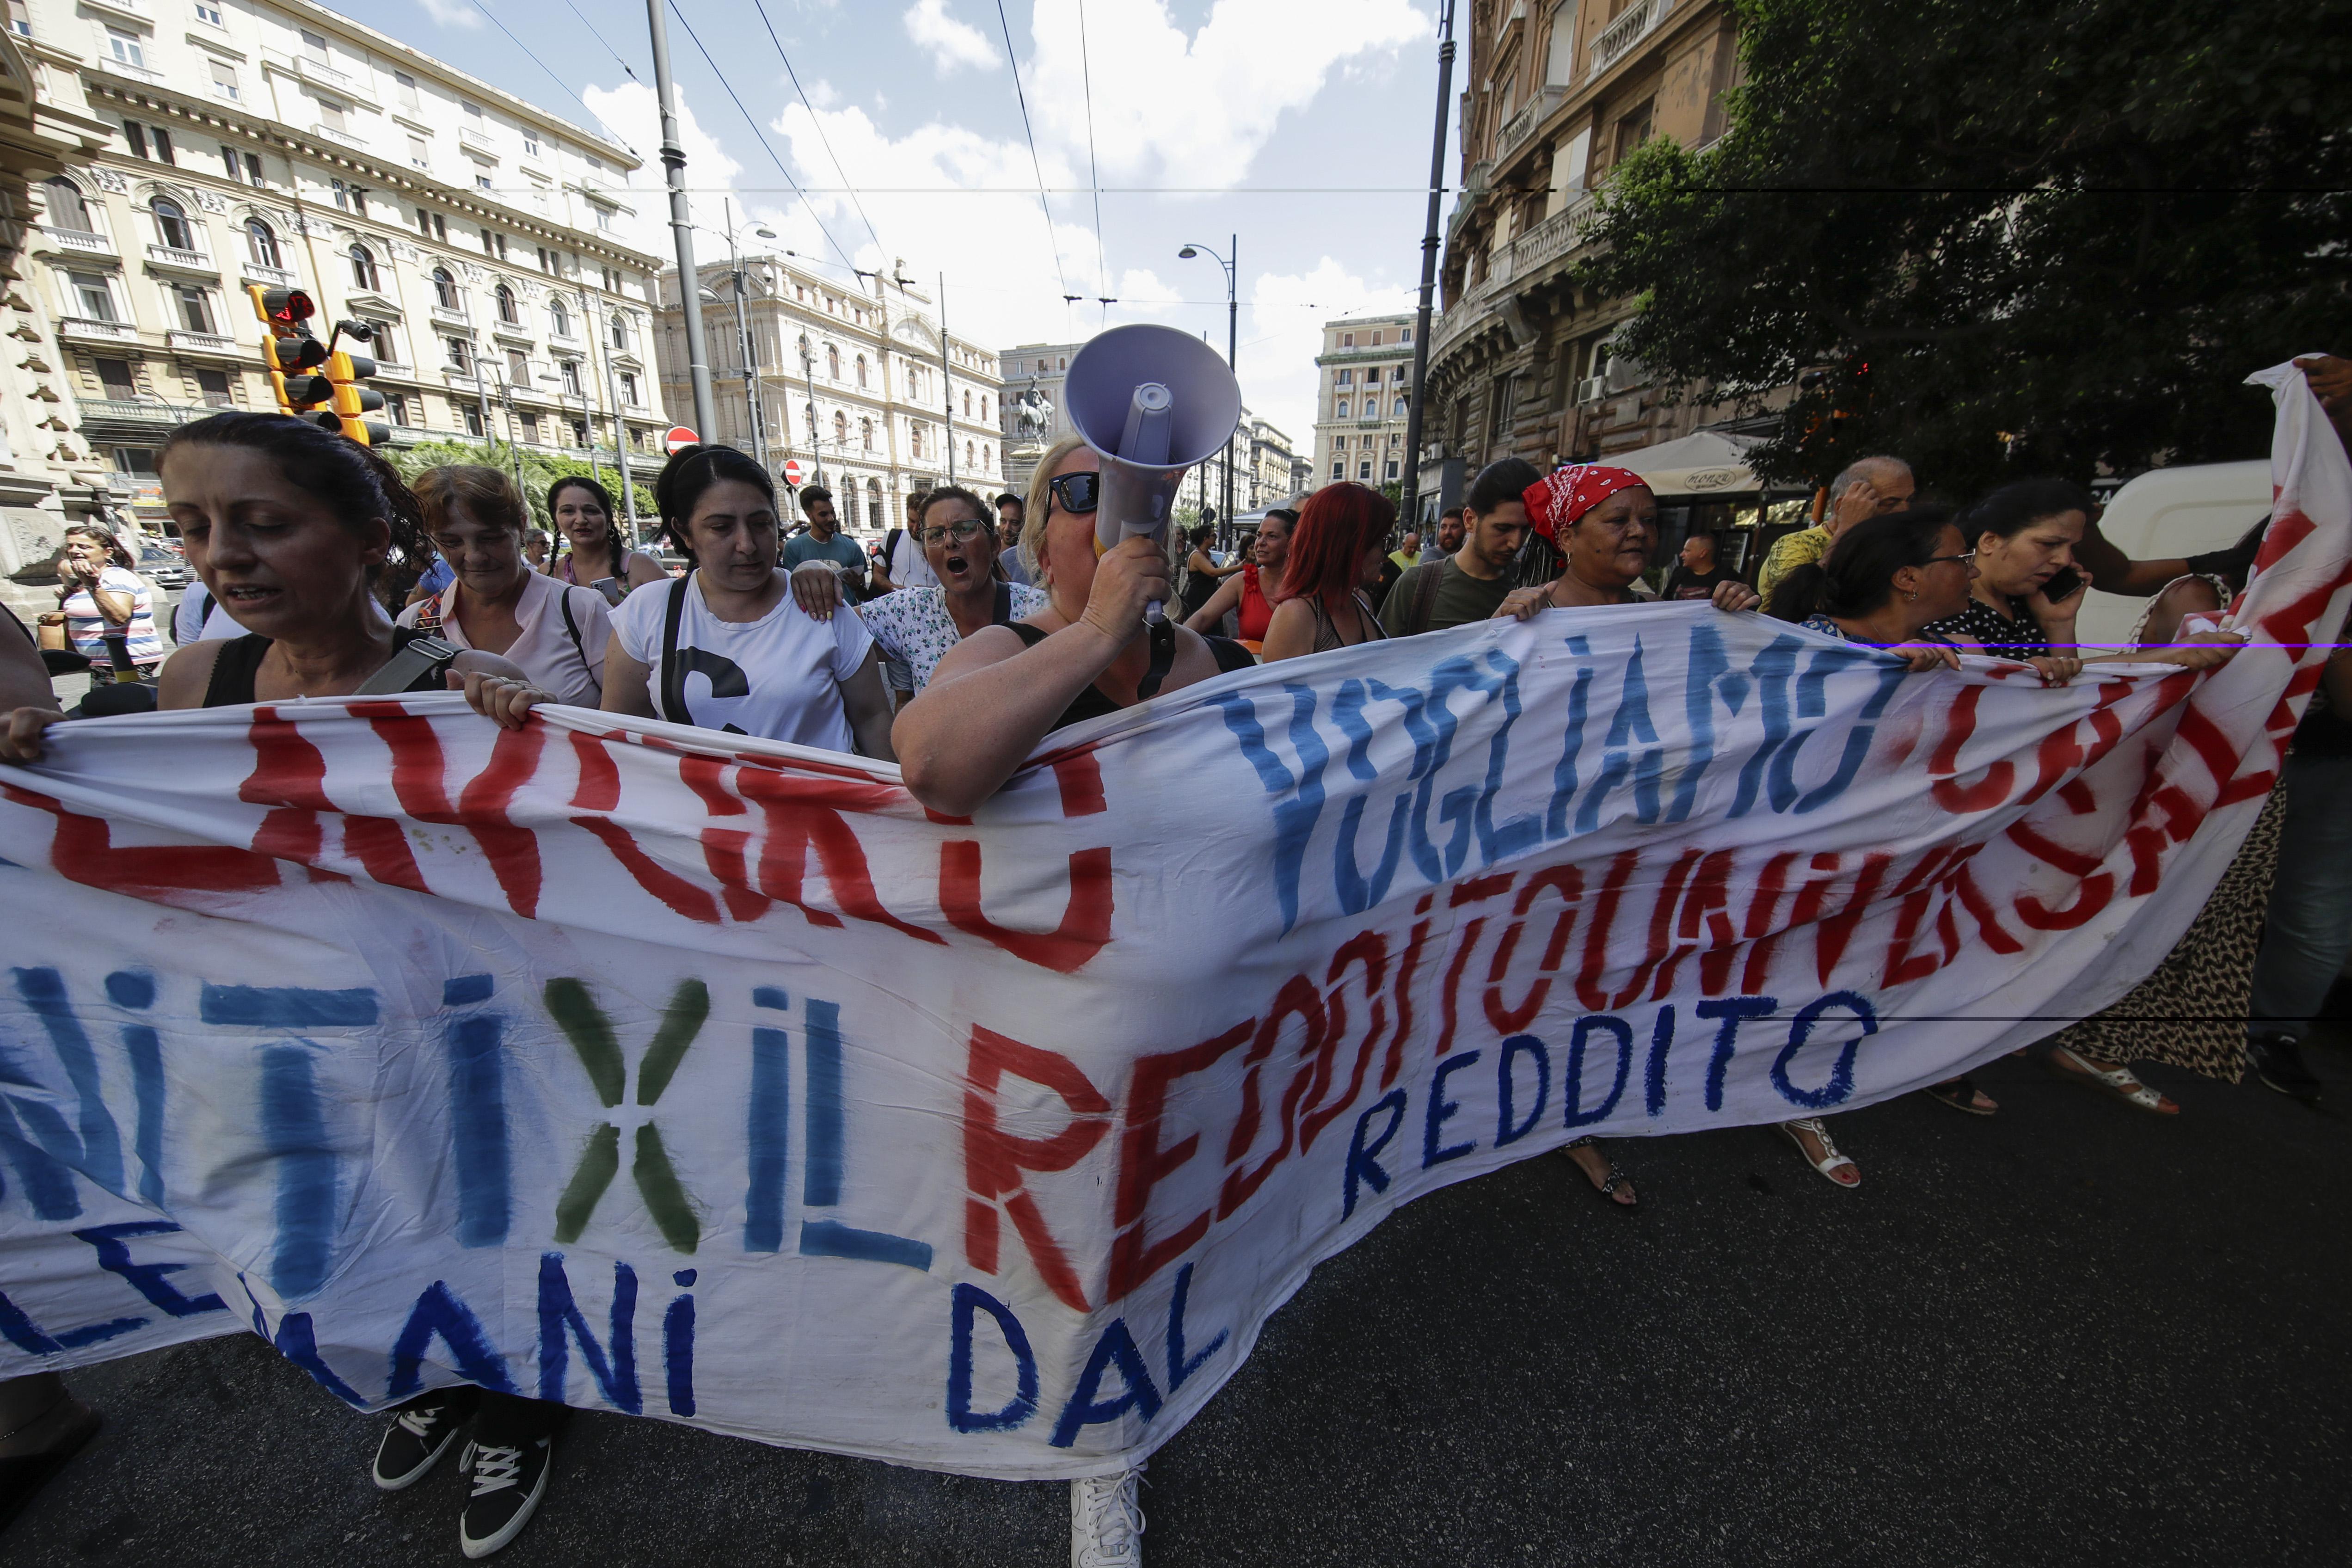 Reddito cittadinanza, corteo oggi a Napoli: slogan contro Giorgia Meloni